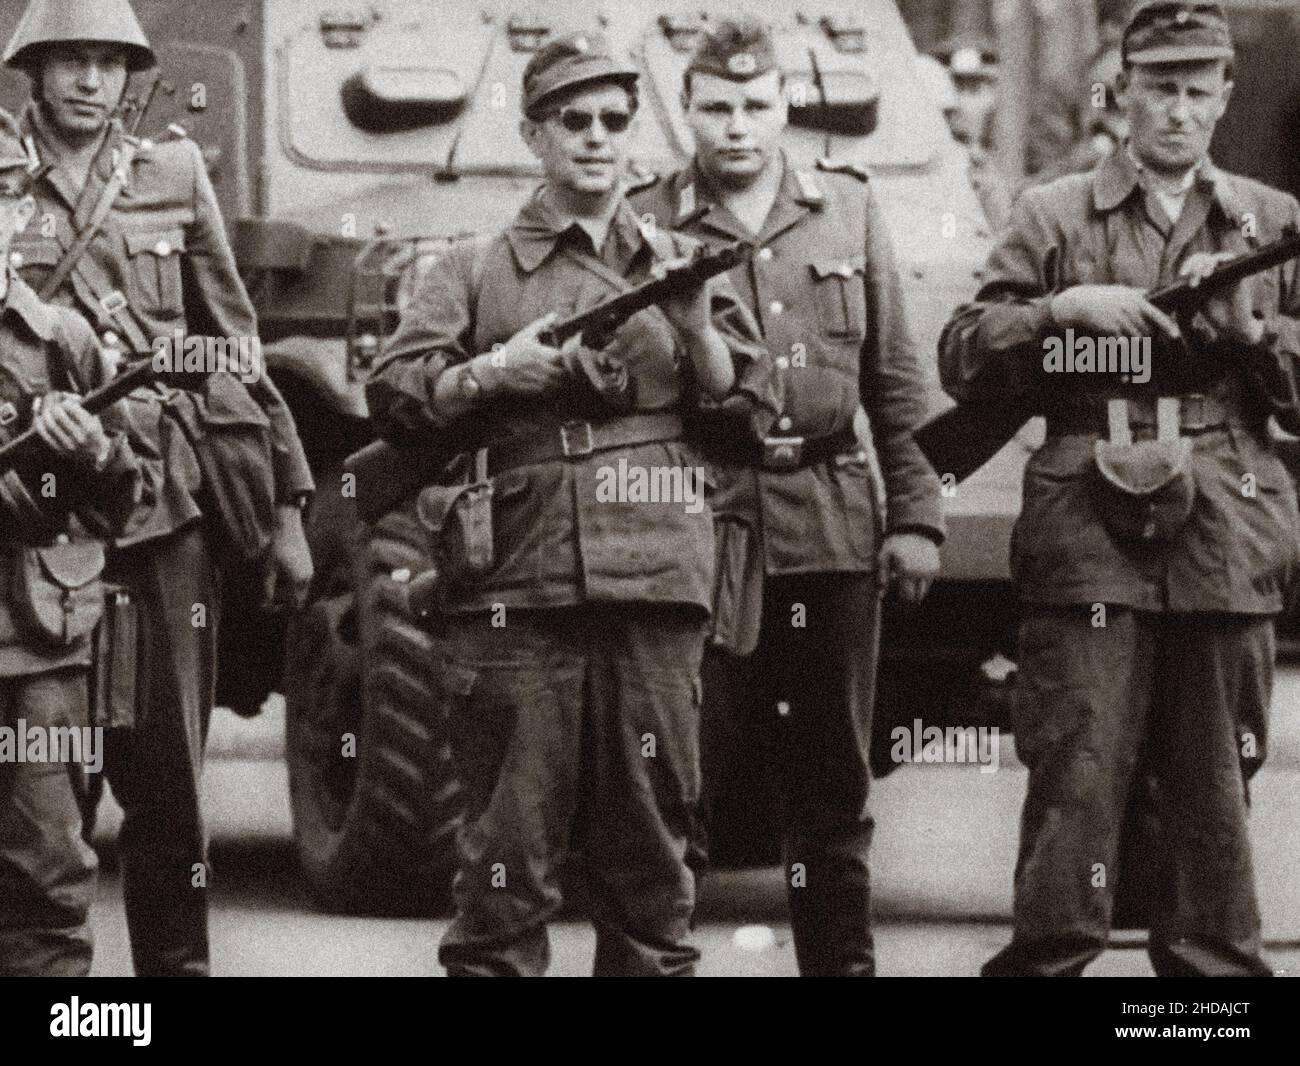 Inizio della costruzione del Muro di Berlino. Gruppi di combattimento della classe operaia della Germania orientale ('Betriebskampfgruppen') con armi sovietiche PPSh-41 a Bran Foto Stock